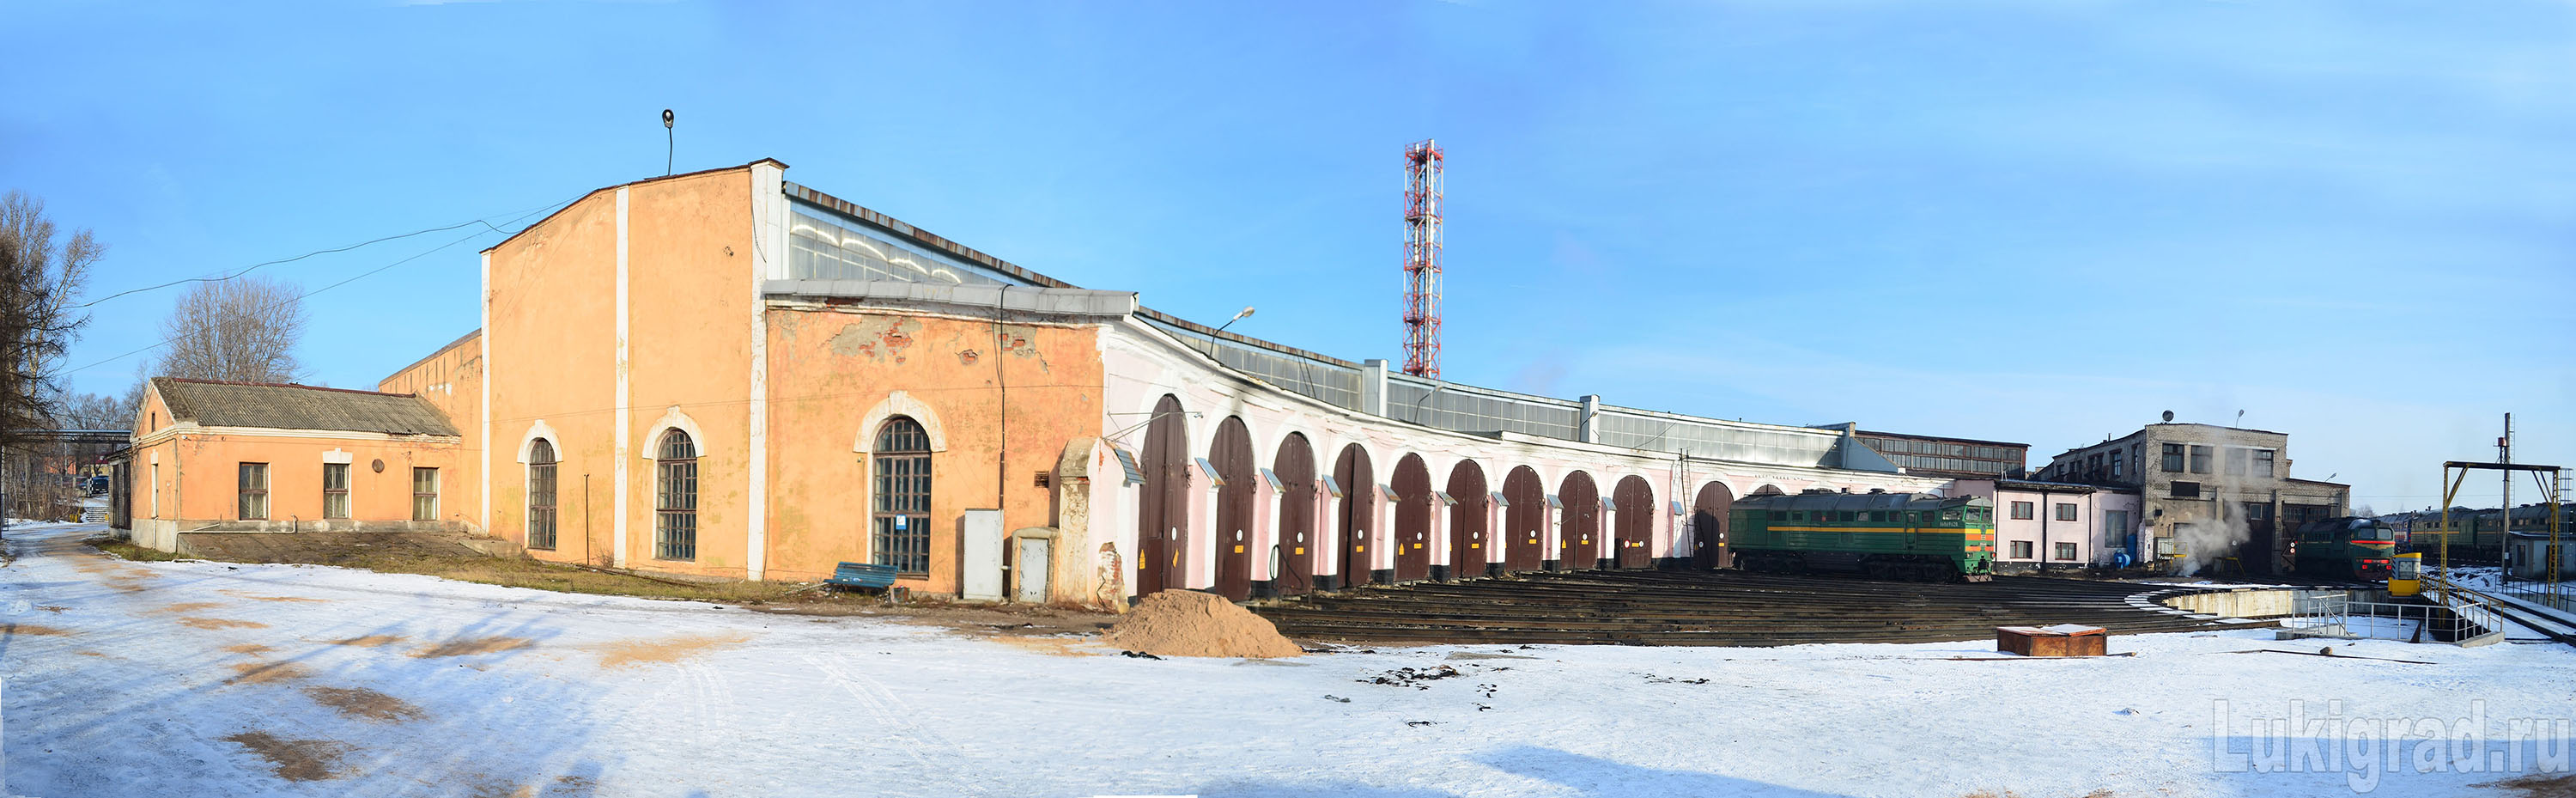 Музей истории локомотивного депо Великие Луки. Лукиград.